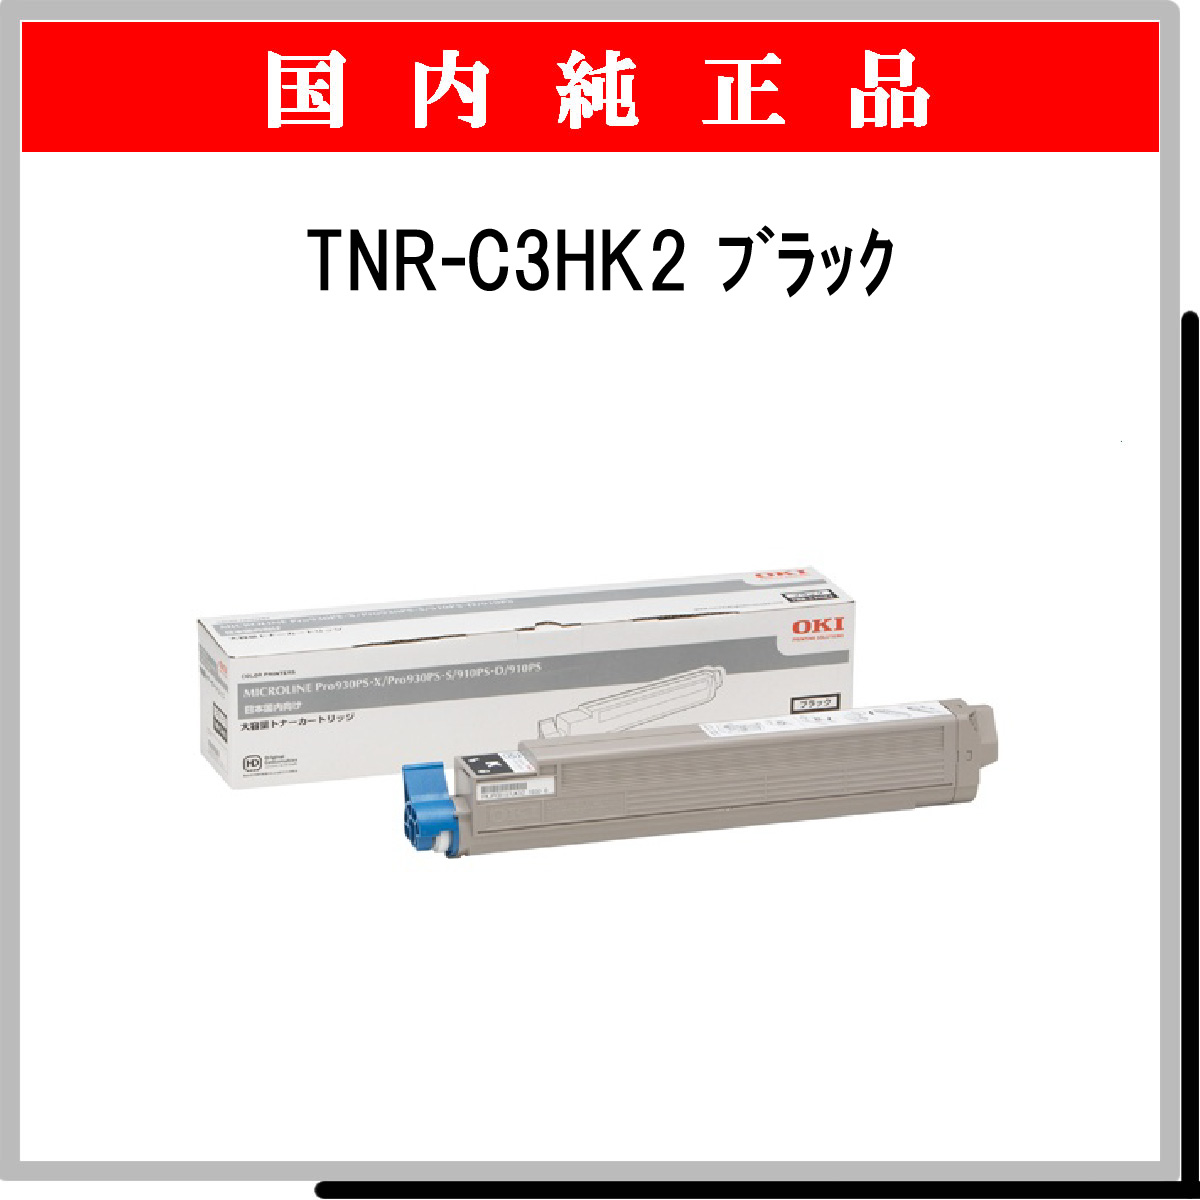 格安高評価 OKI TNR-C3HK2 純正 大容量トナーカートリッジ ブラック イーベスト 通販 PayPayモール 